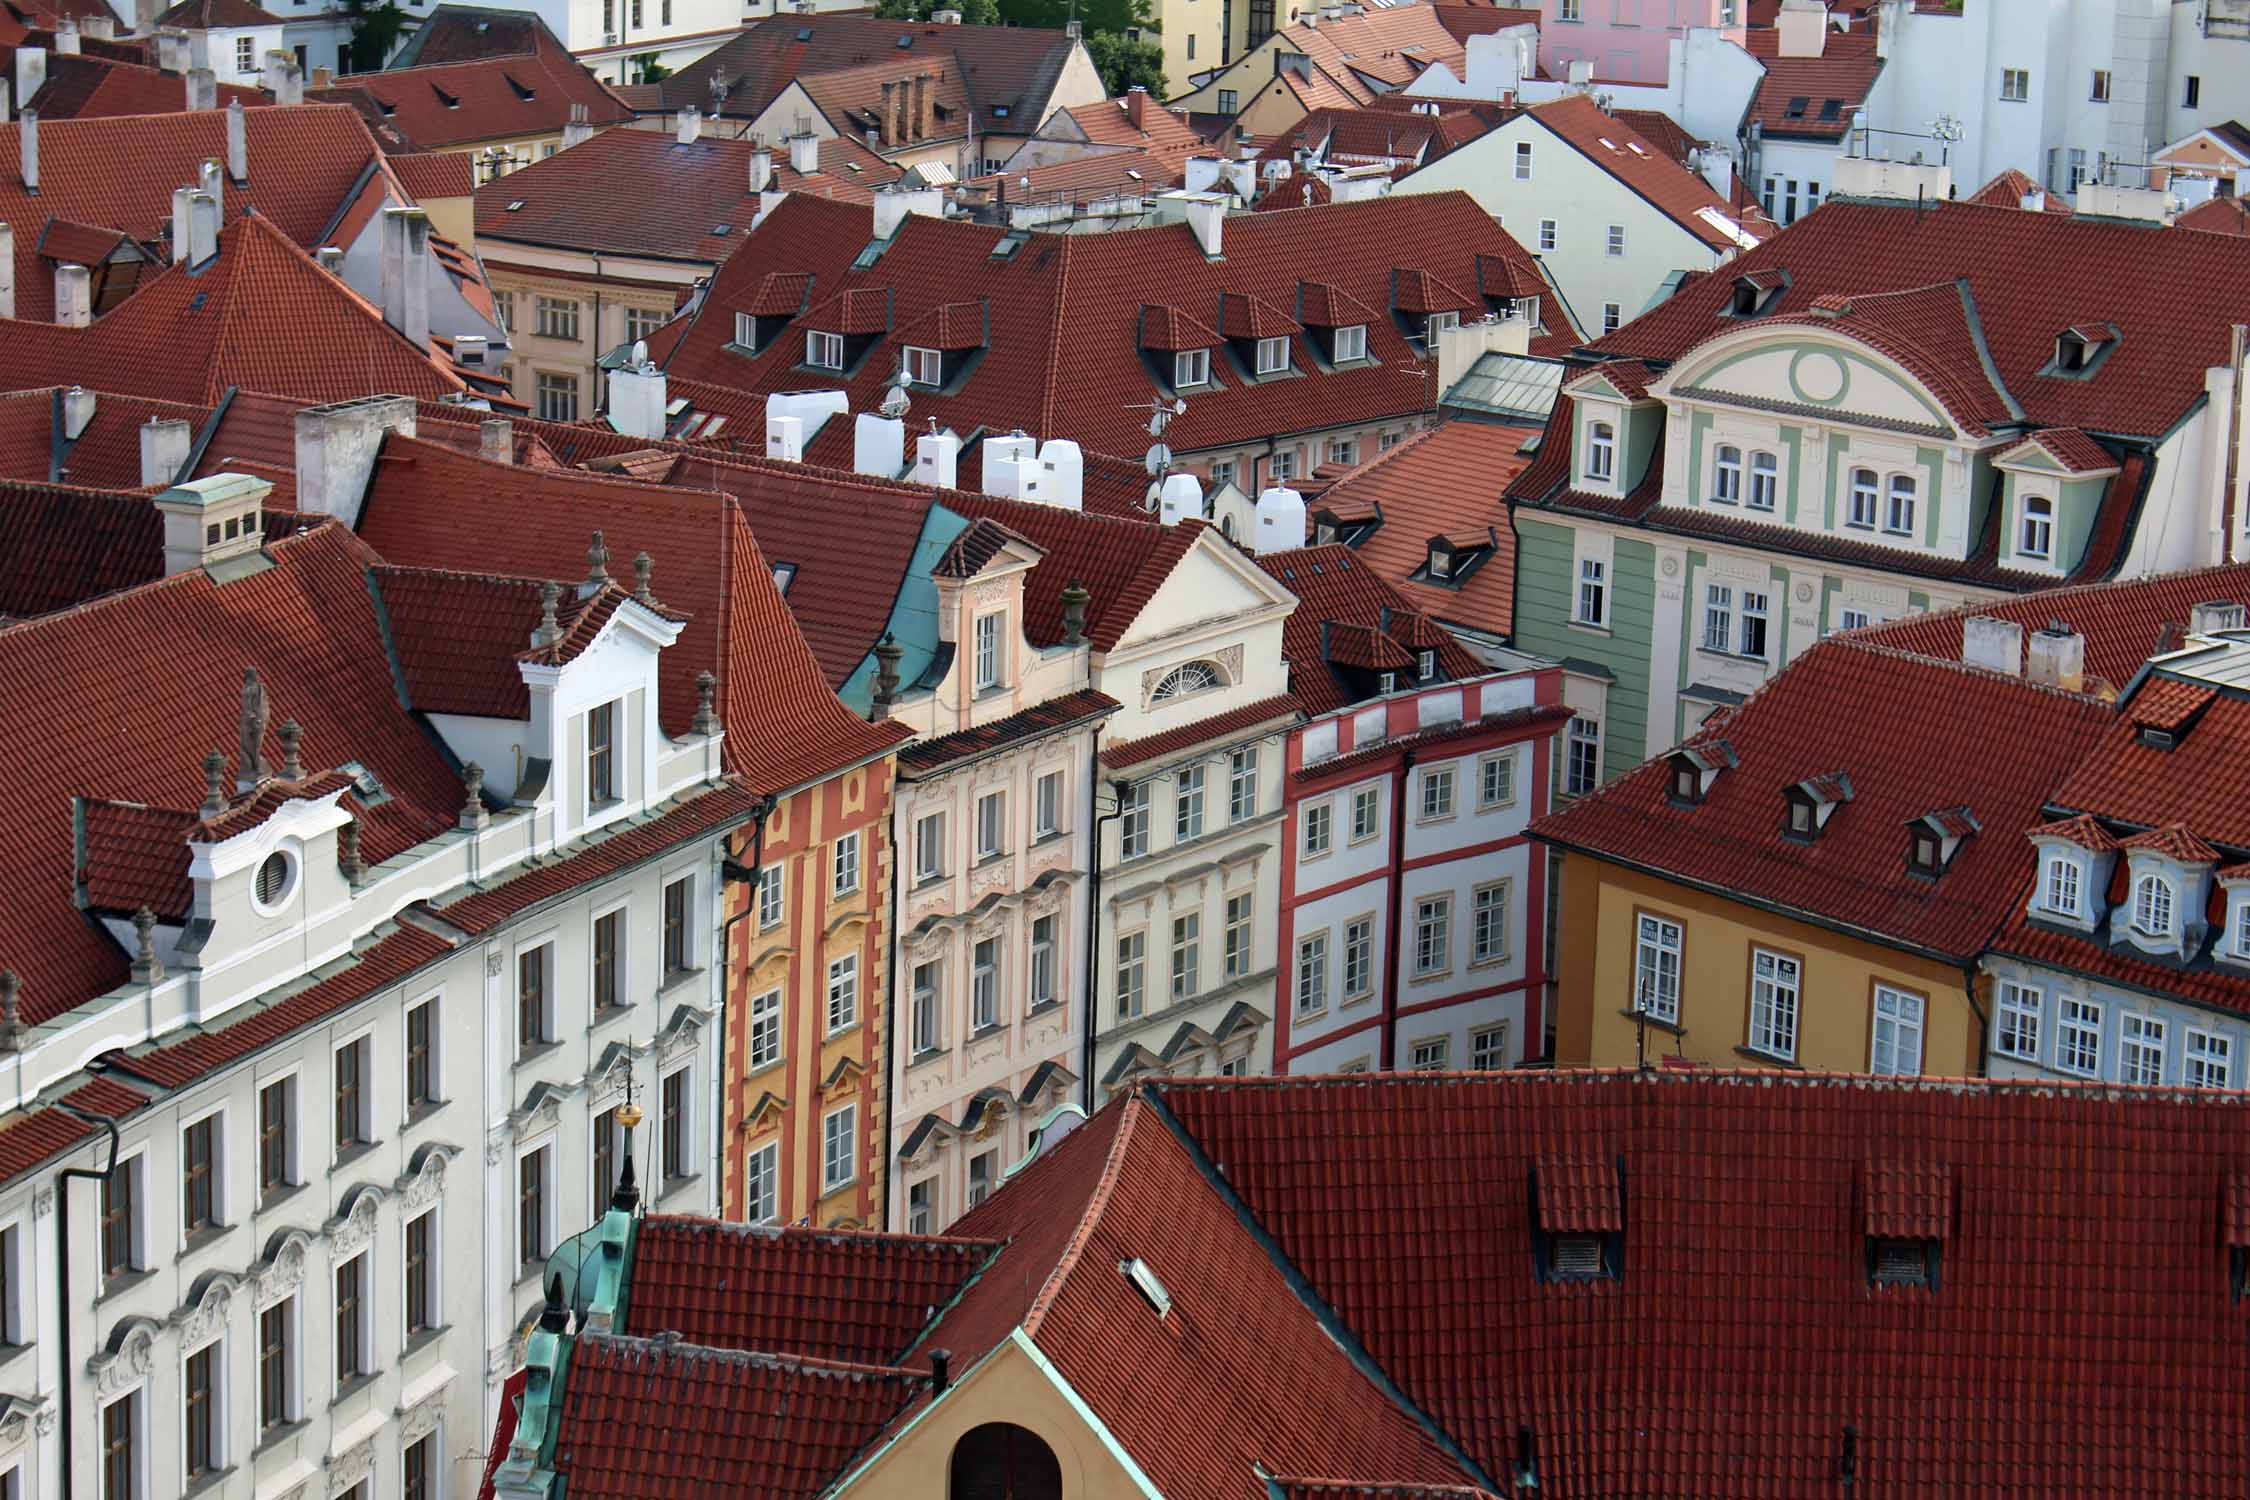 Prague, quartier Stare Mesto, façades colorées